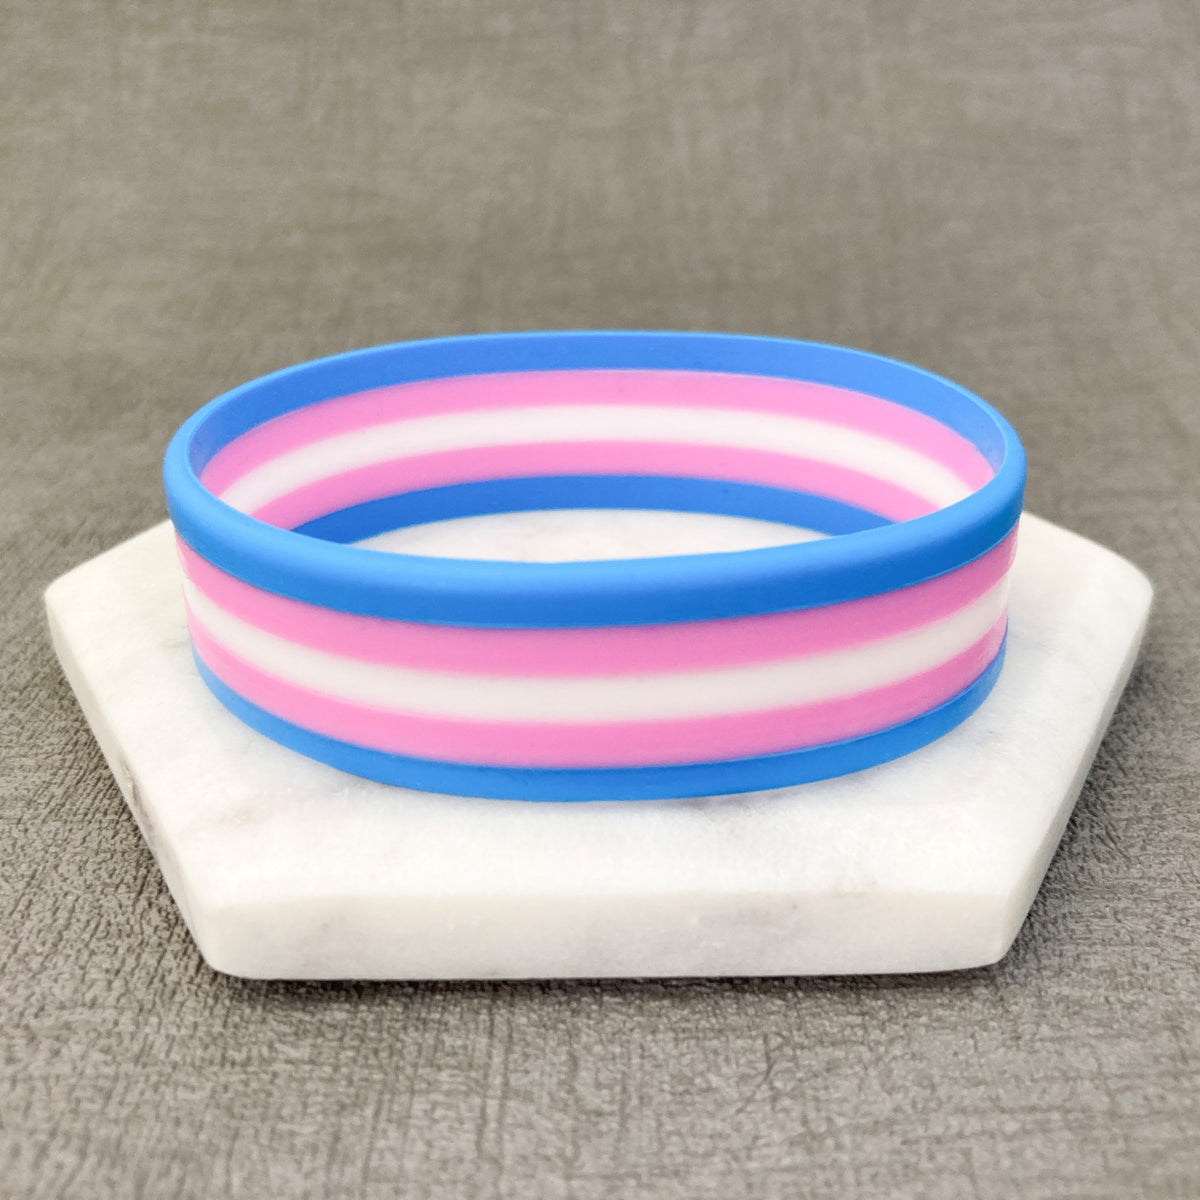 lgbt pride wristbands transgender blue pink white